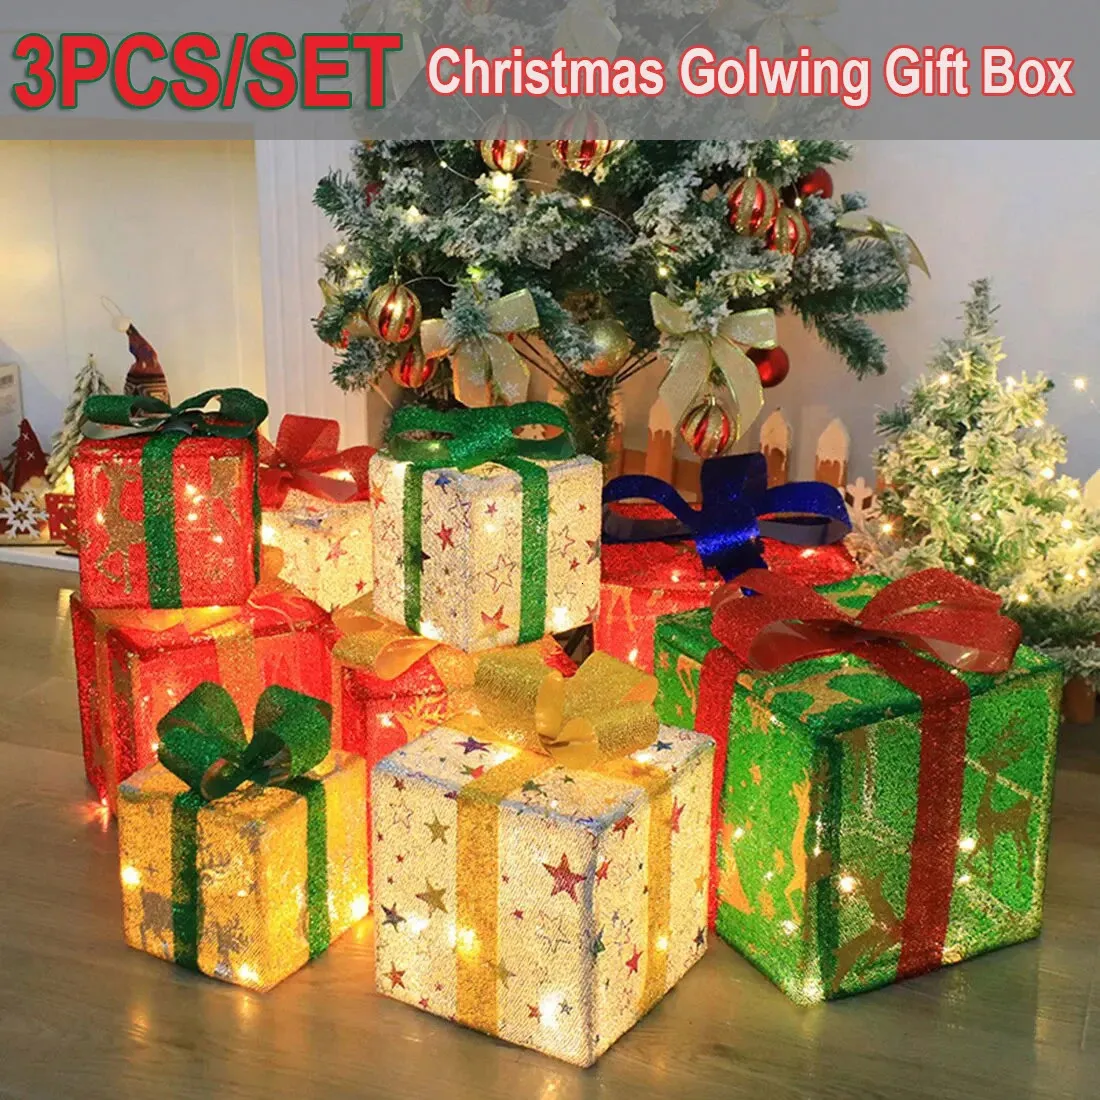 Décorations de Noël 3pcsSet Glowing Gift Box Décoration Ornement avec arc Éclairage extérieur Noël 231120